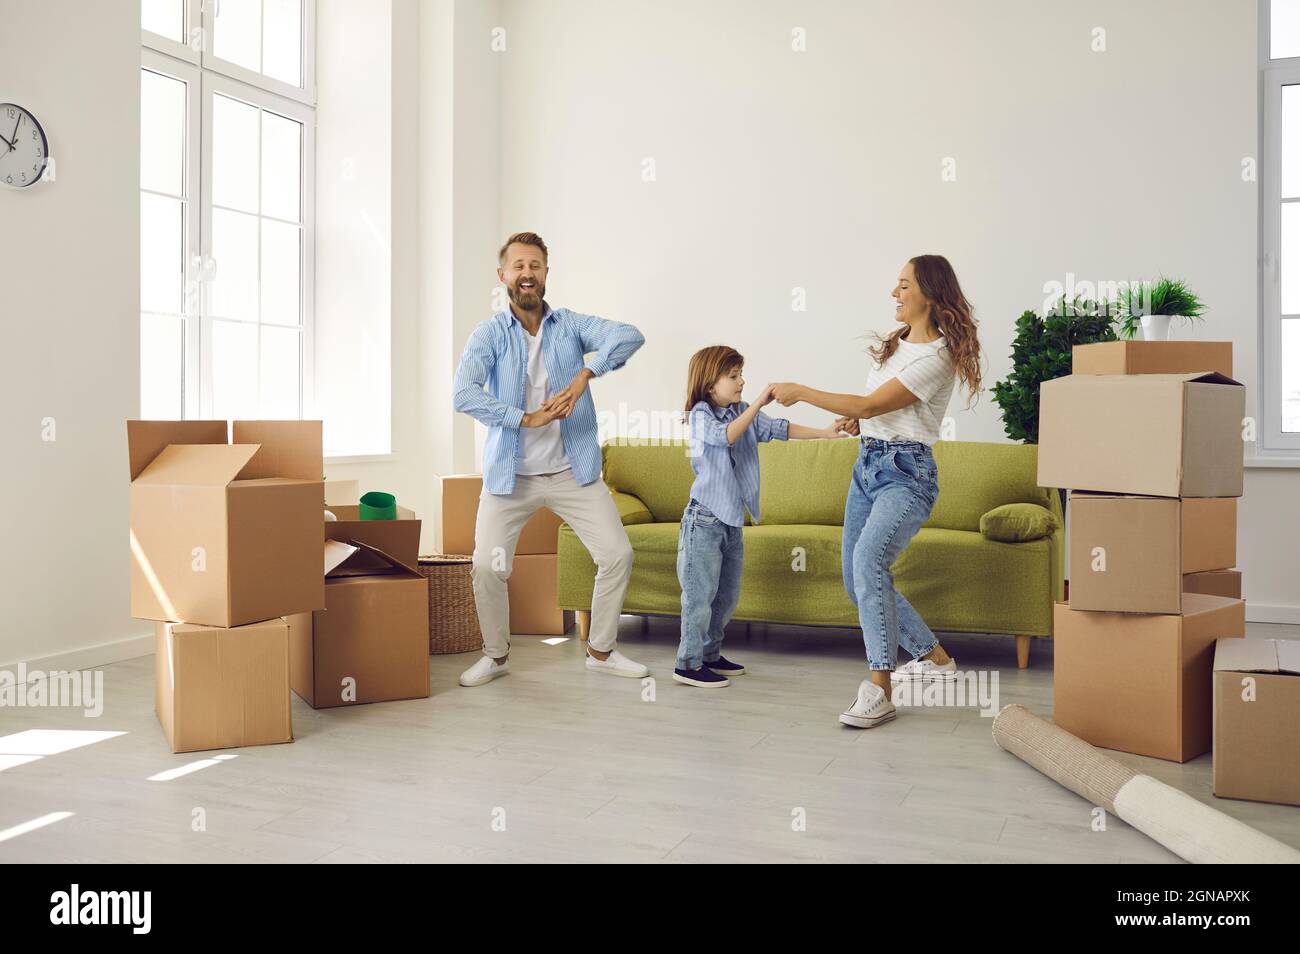 Glückliche Mutter, Vater und Kind tanzen und Spaß haben in ihrem neuen Haus am Umzugstag Stockfoto